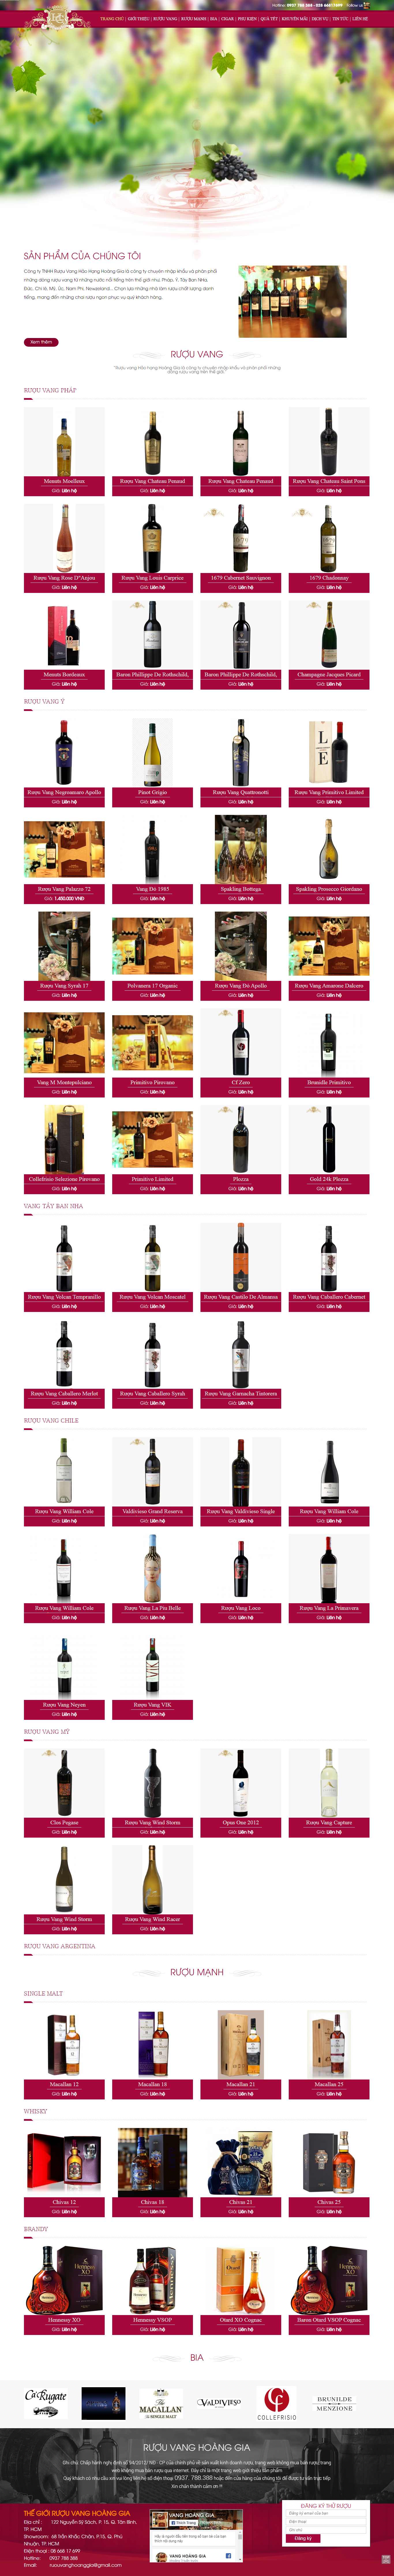 Thiết kế Website rượu vang - www.hoanggiawines.vn